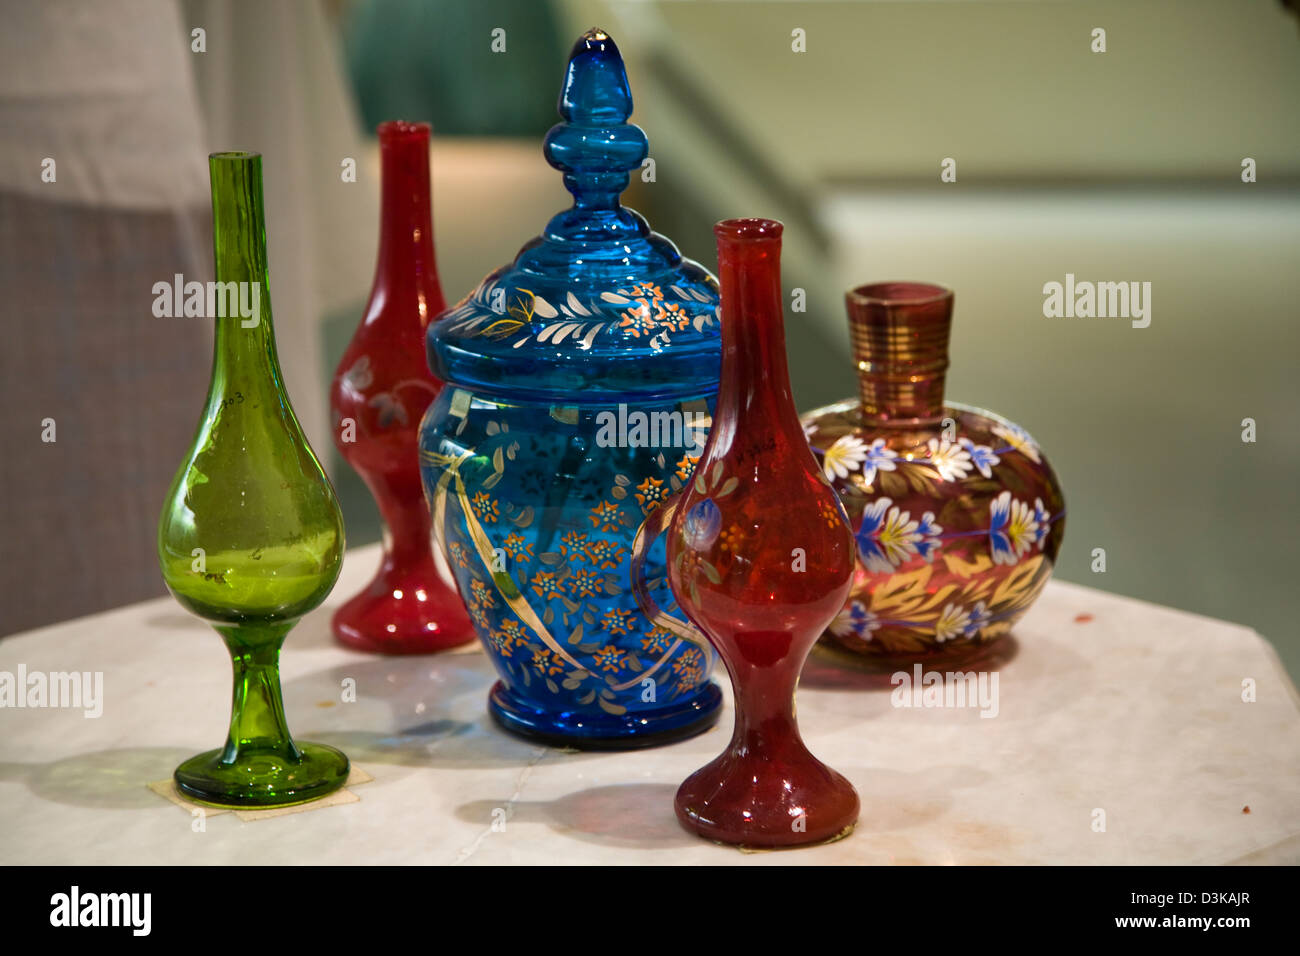 Une exposition de meubles anciens verre soufflé à la main, Musée National de Bahreïn, Manama, Bahreïn. Banque D'Images